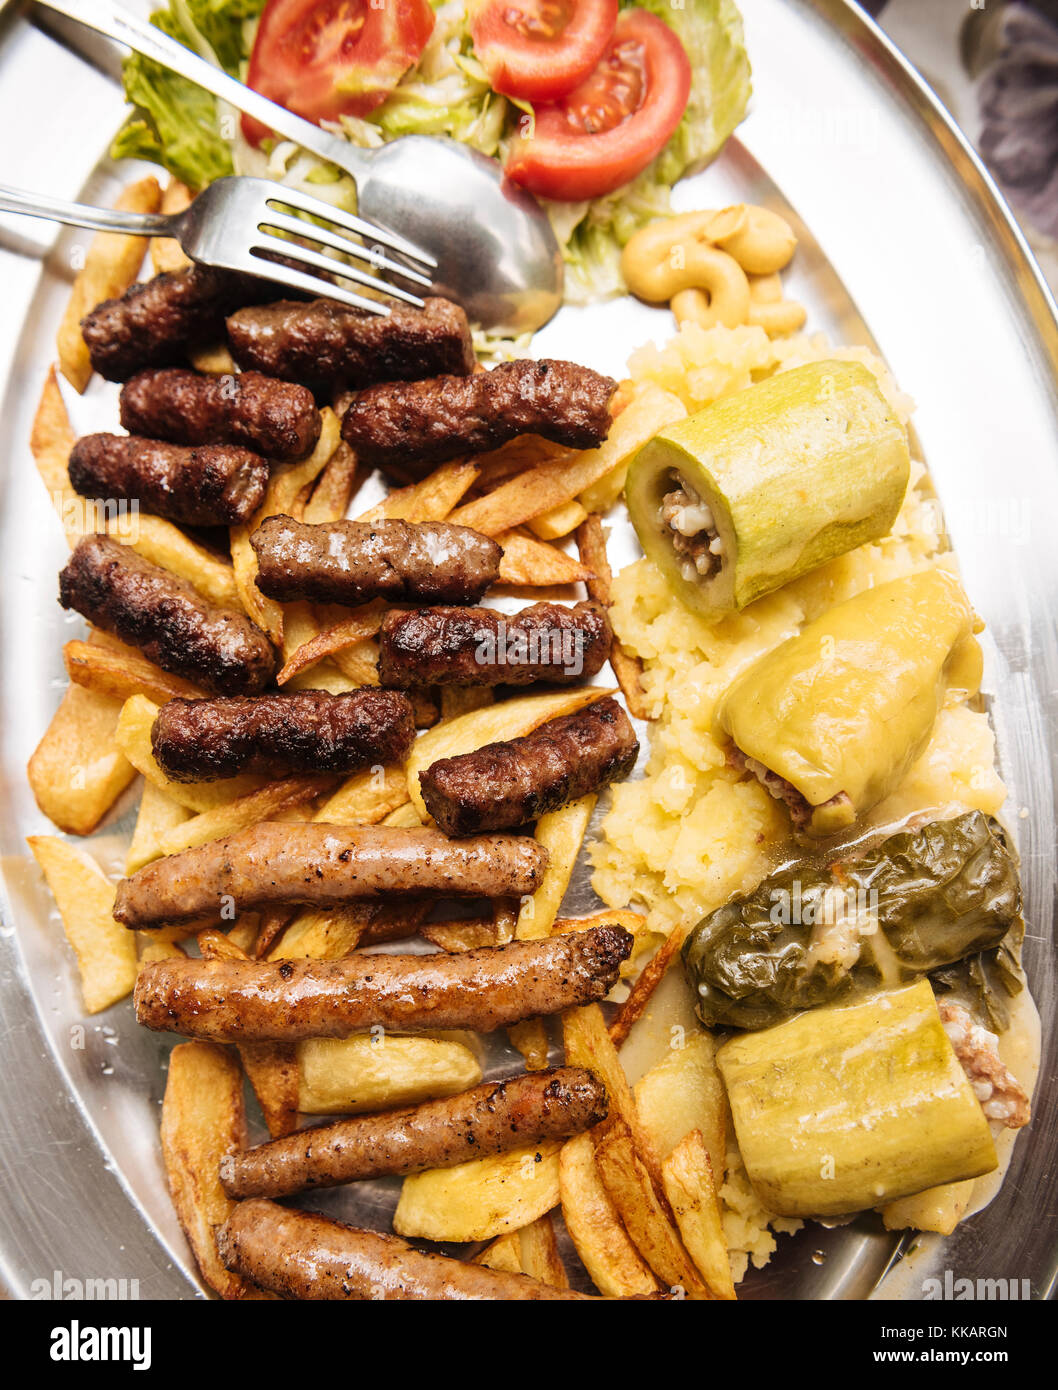 Traditionelle Gericht Der cevapi und Würstchen, Mostar, Bosnien und Herzegowina, Europa Stockfoto